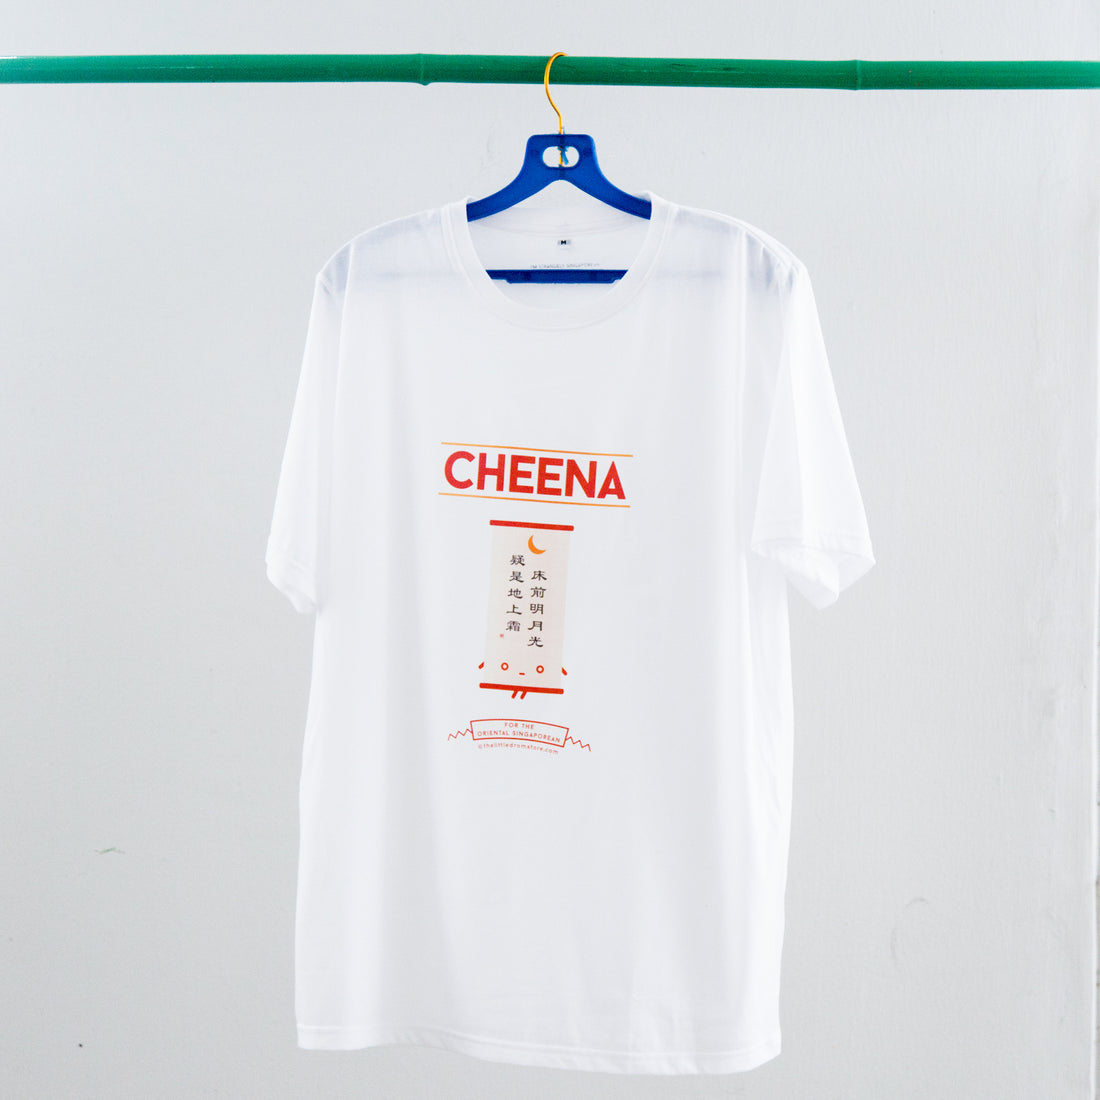 Cheena T-Shirt